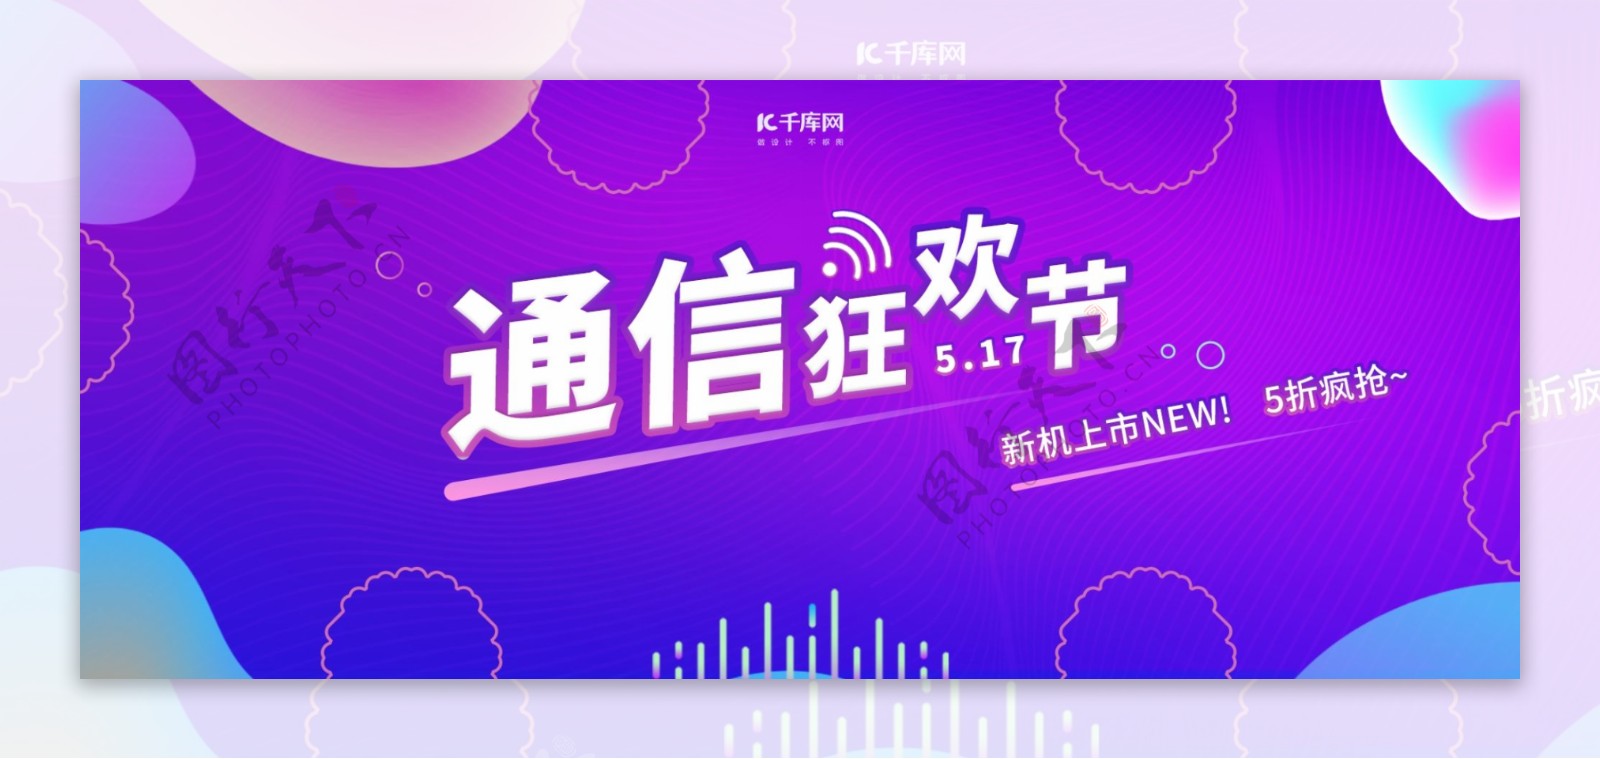 通信狂欢节电商促销banner